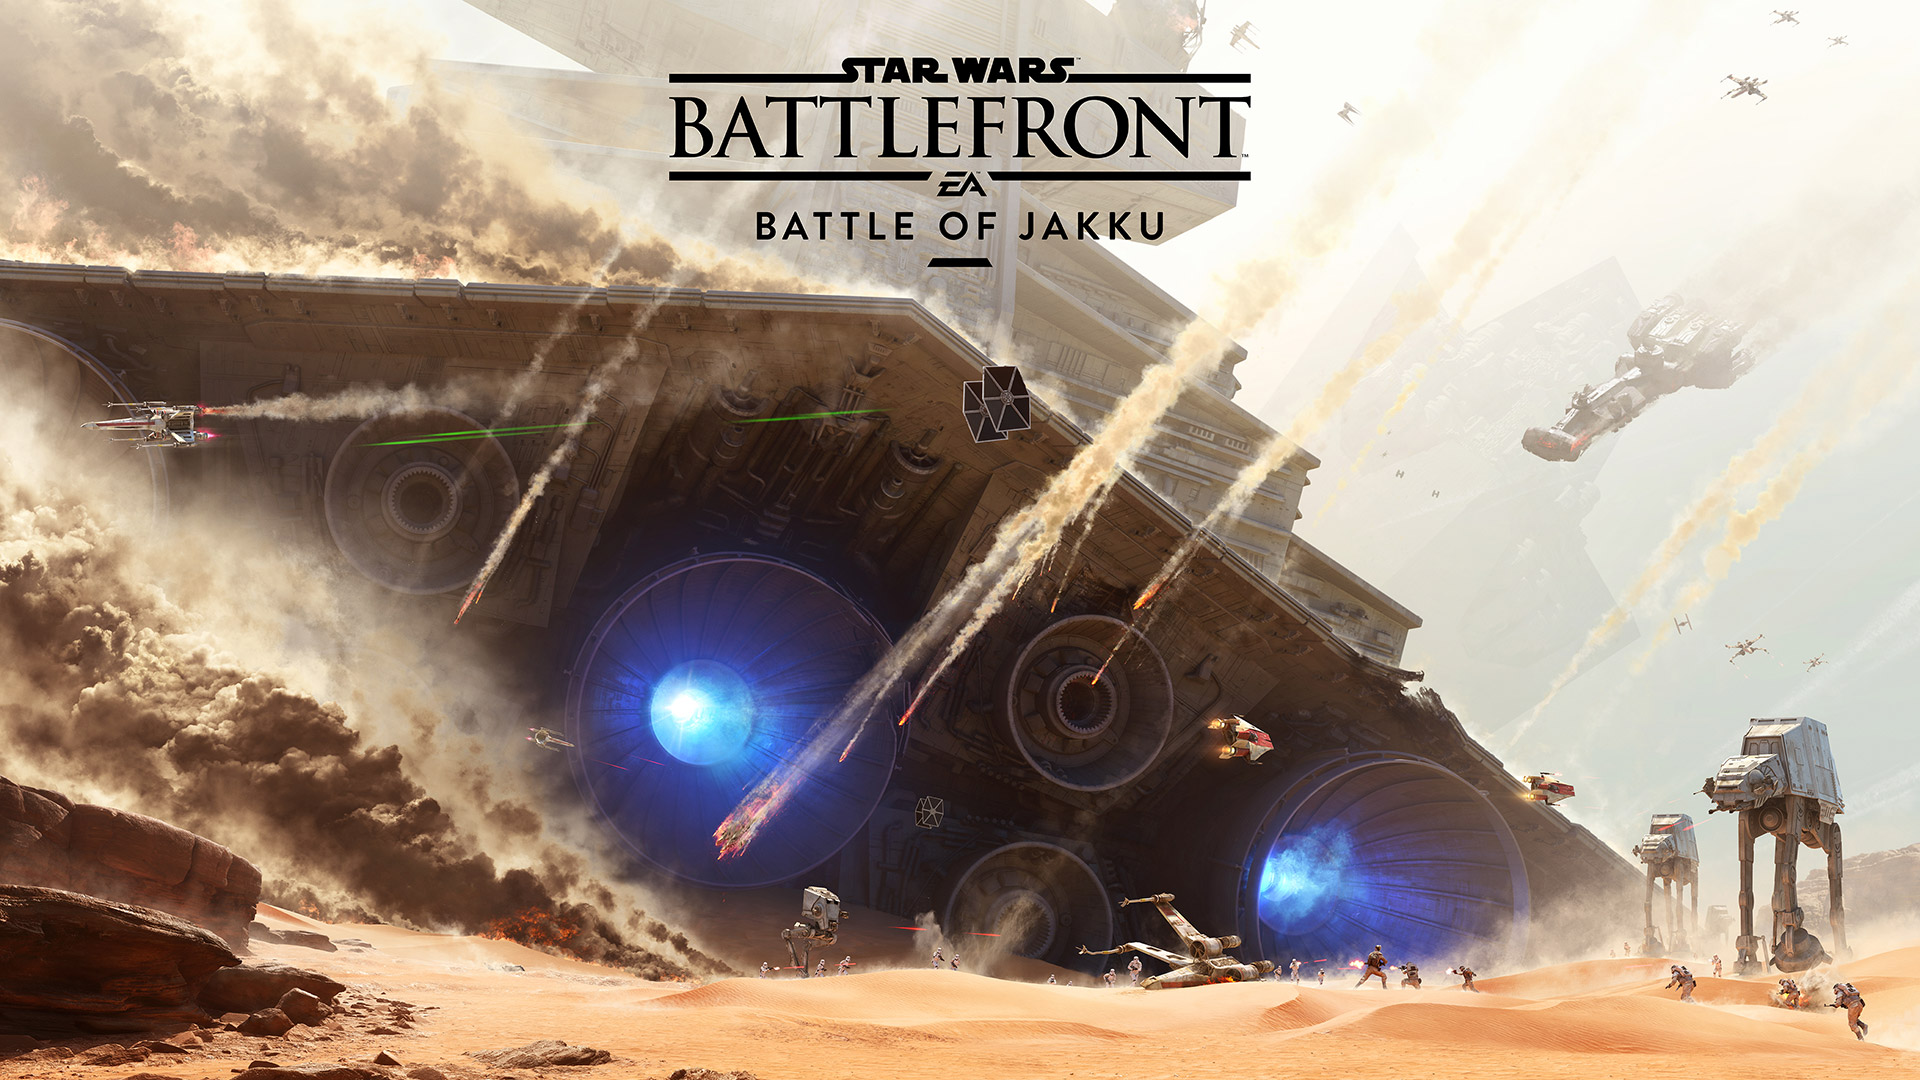 Star Wars Battlefront: Battle of Jakku - screenshot 2